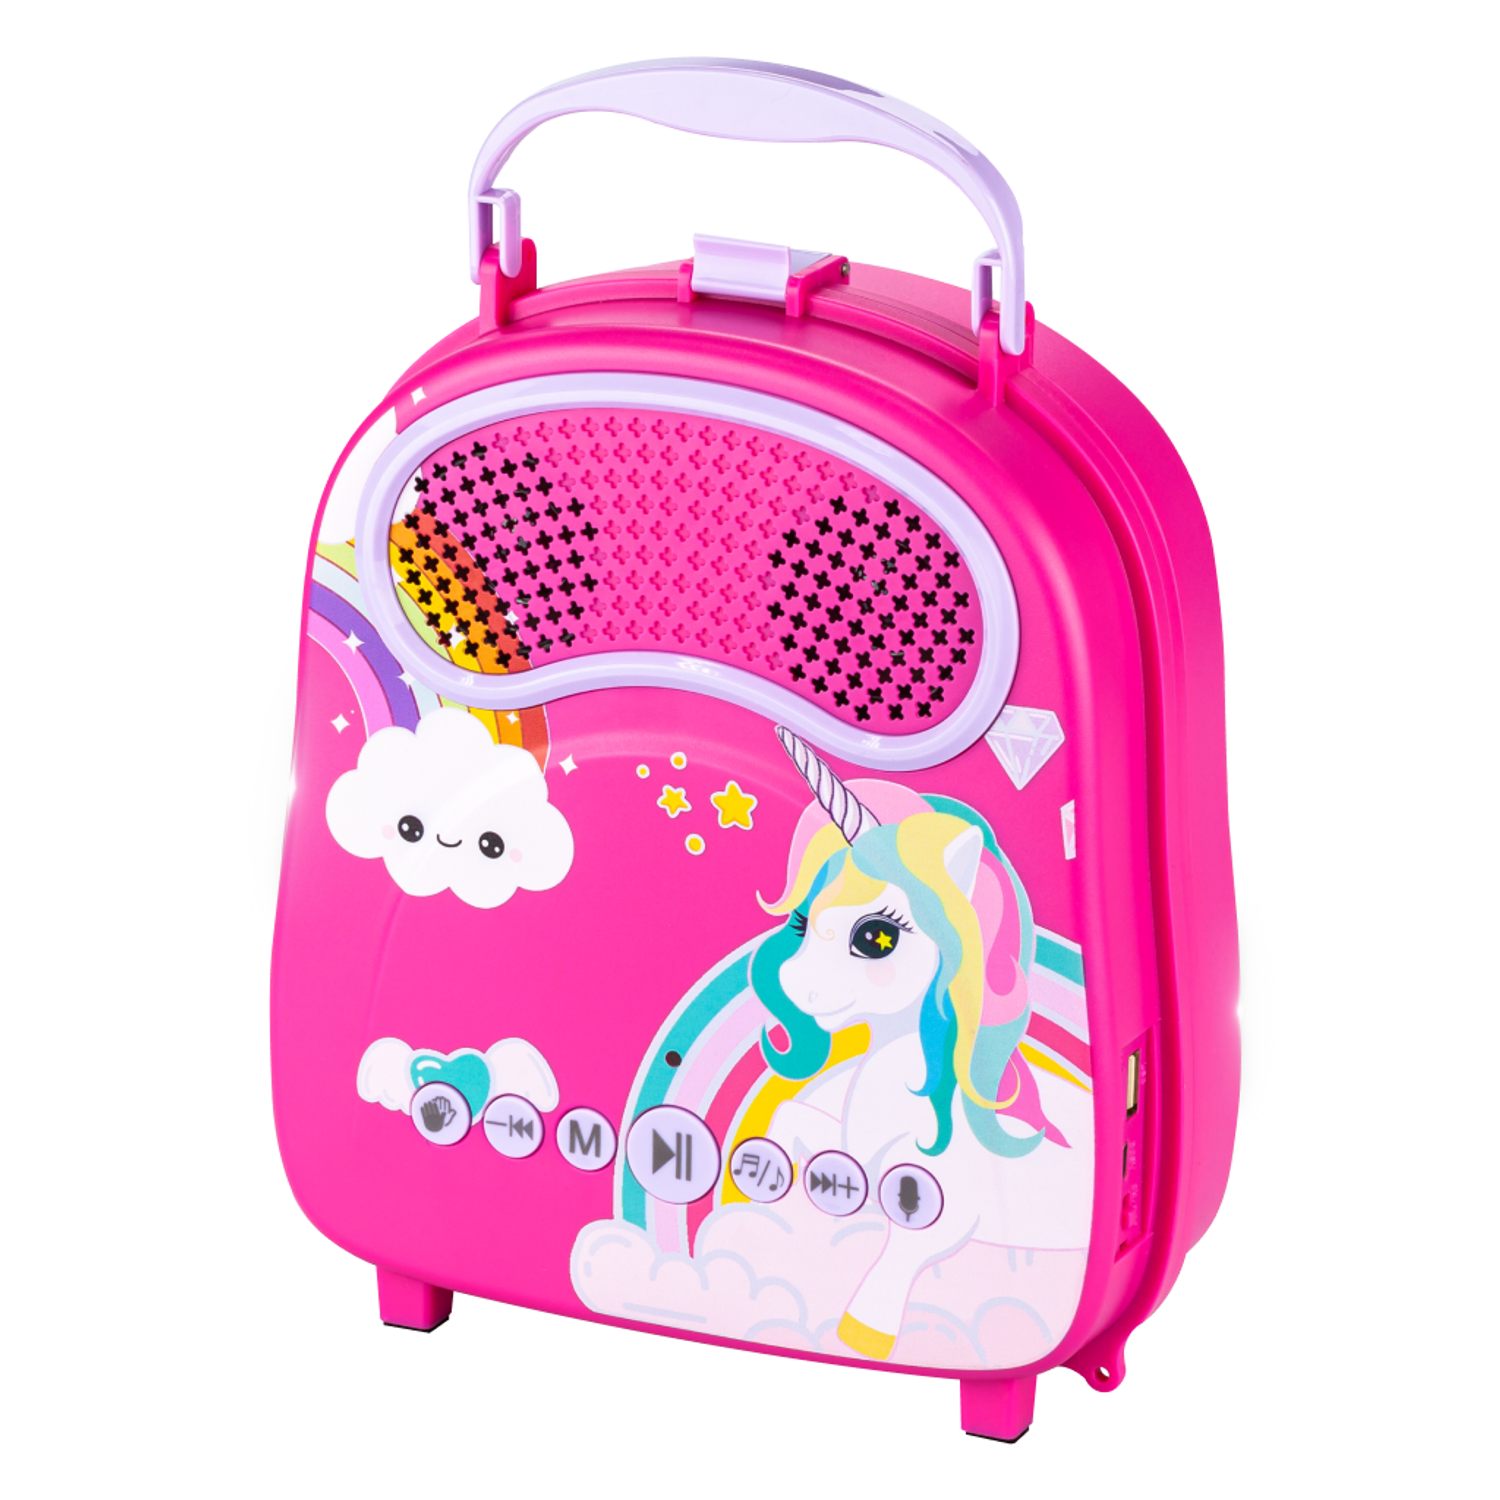 Караоке-рюкзачок для детей Solmax с микрофоном и колонкой Bluetooth розовый - фото 7